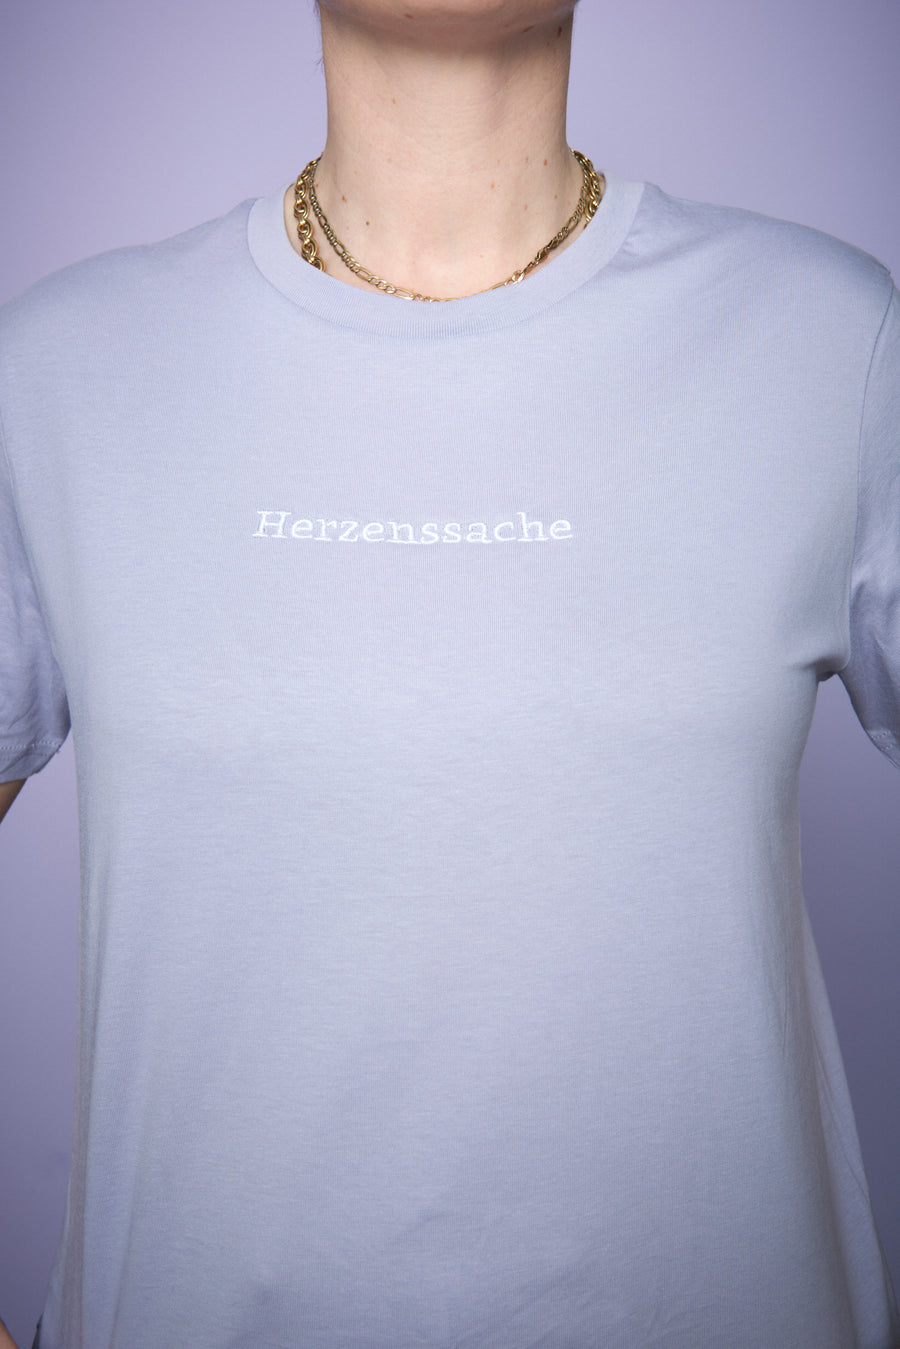 T-Shirt "Herzenssache" - Lila